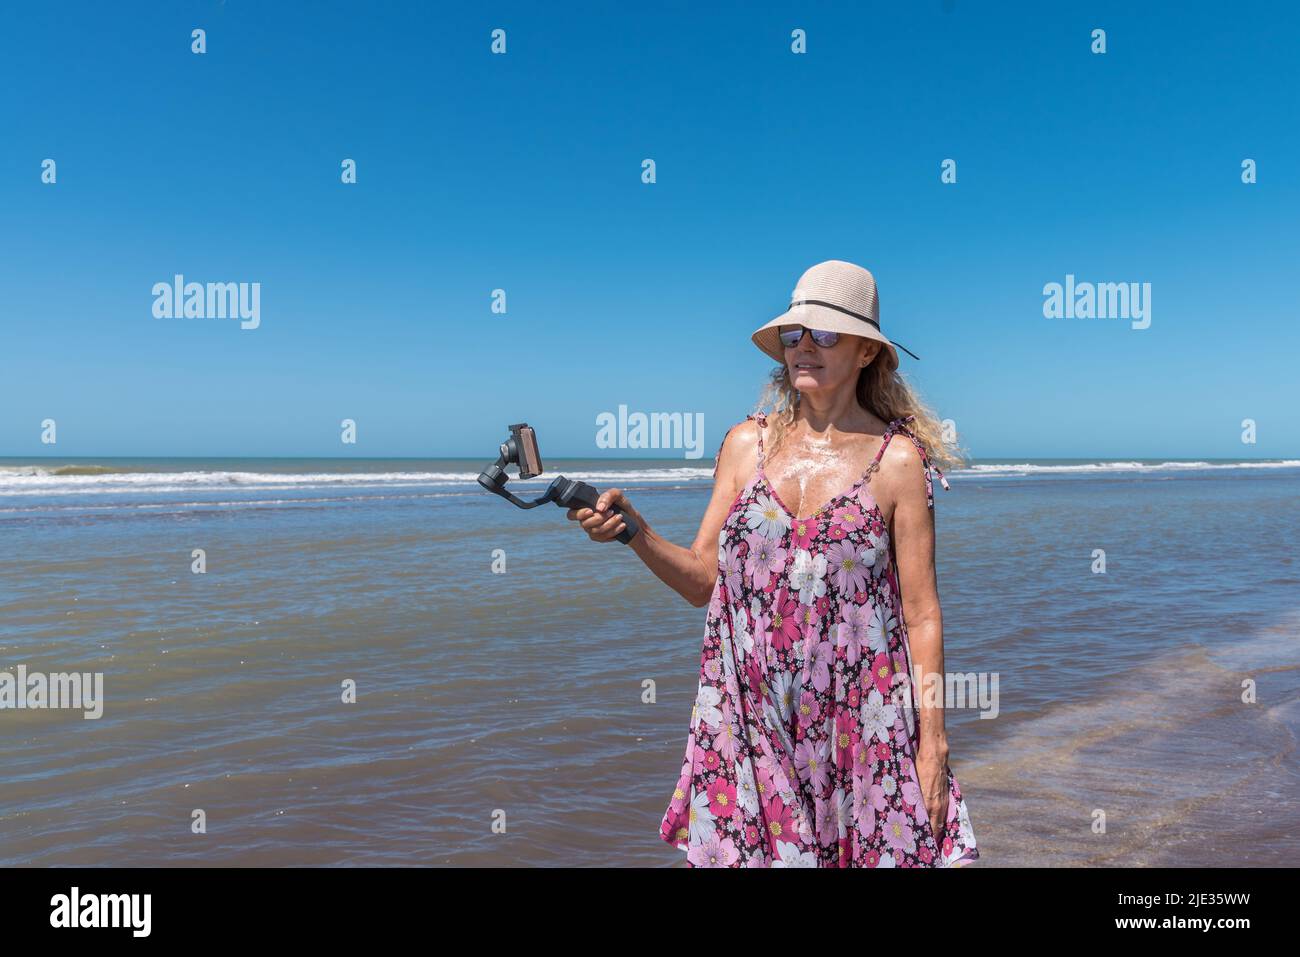 Frau mit einem Hut, der am Strand steht, während sie mit einem auf einem Gimbal-Stabilisator befestigten Handy filmt Stockfoto